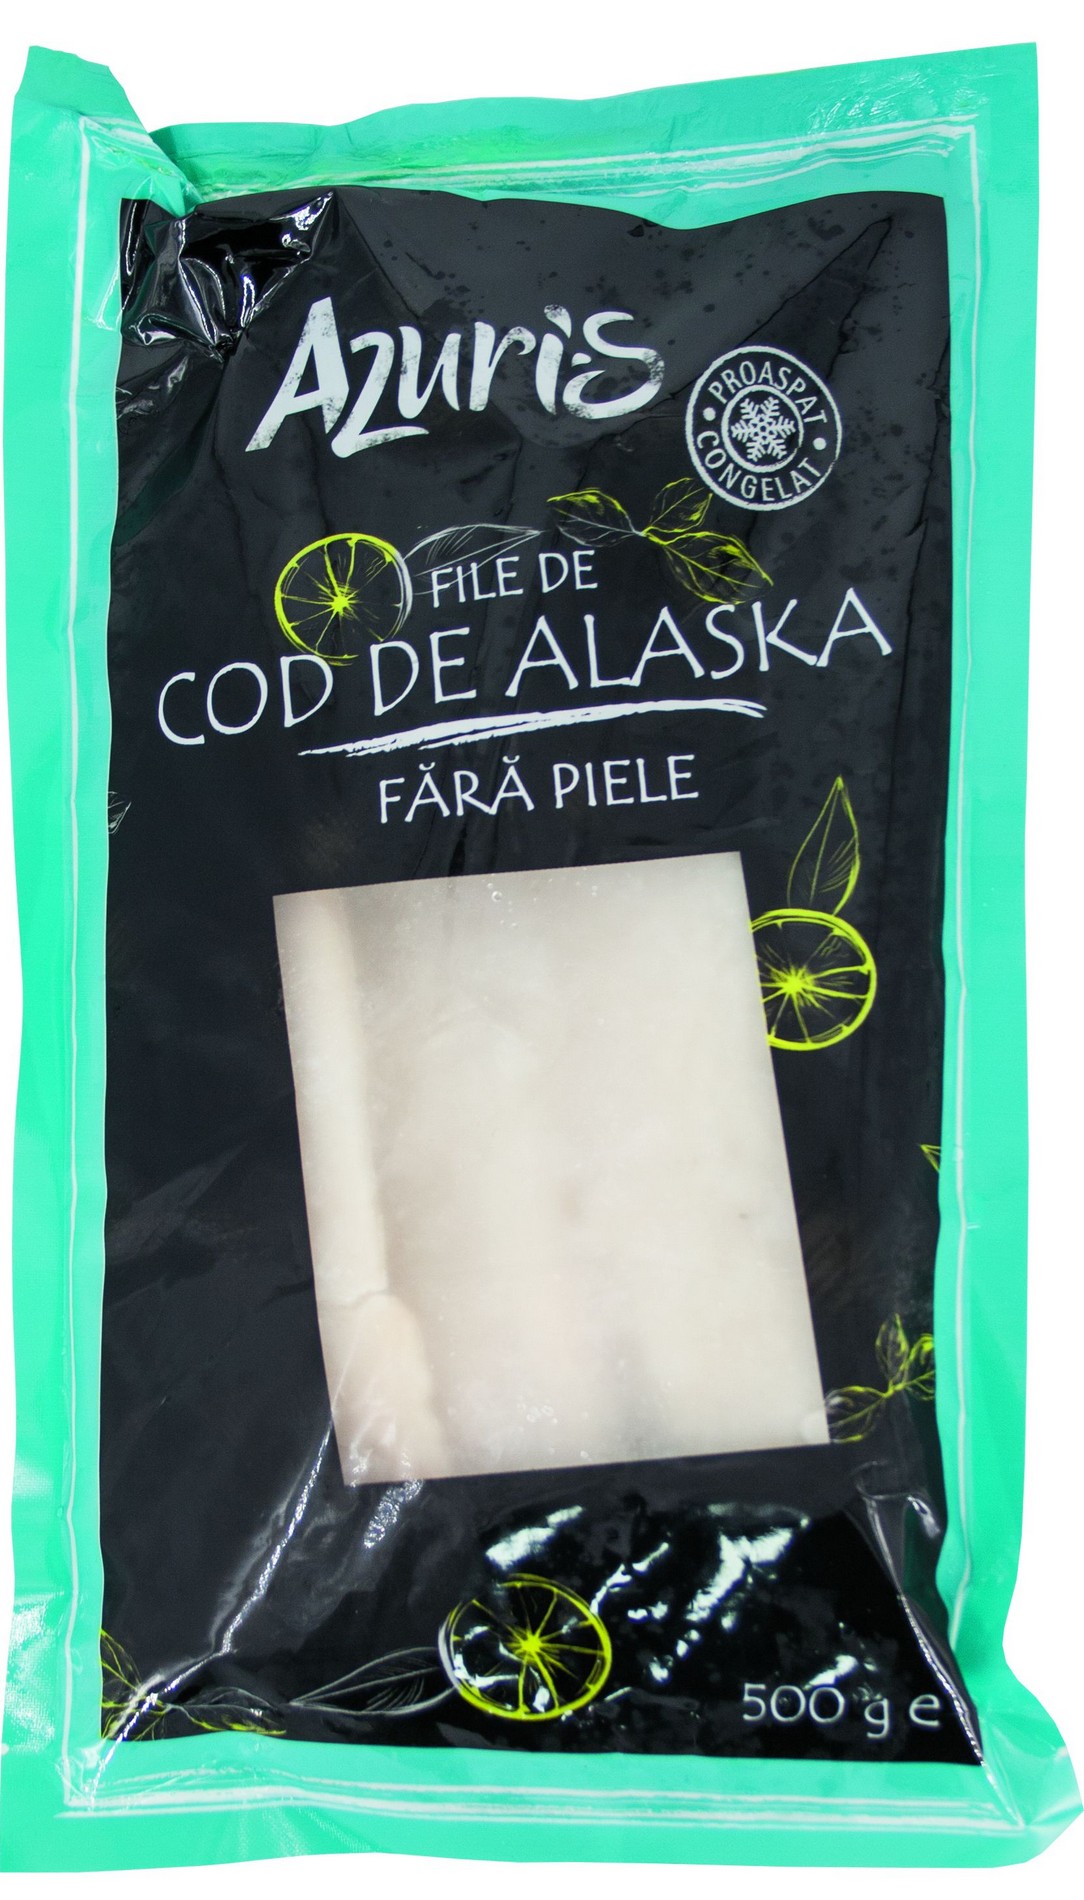 COD DE ALASKA FARA PIELE AZURIS 500G # 10 buc